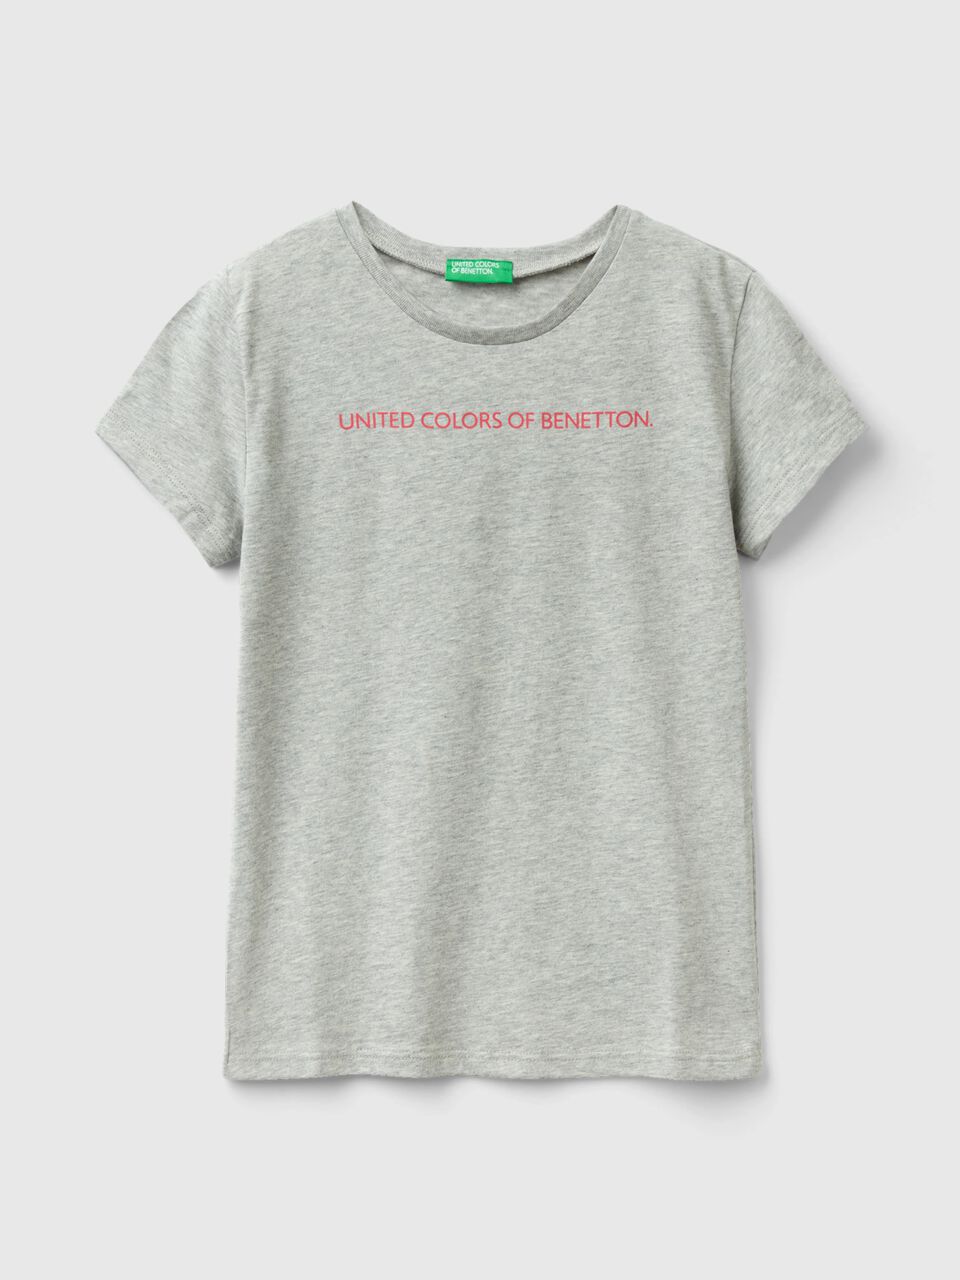 T-Shirt Hellgrau Logo | 100% mit Benetton - Baumwolle